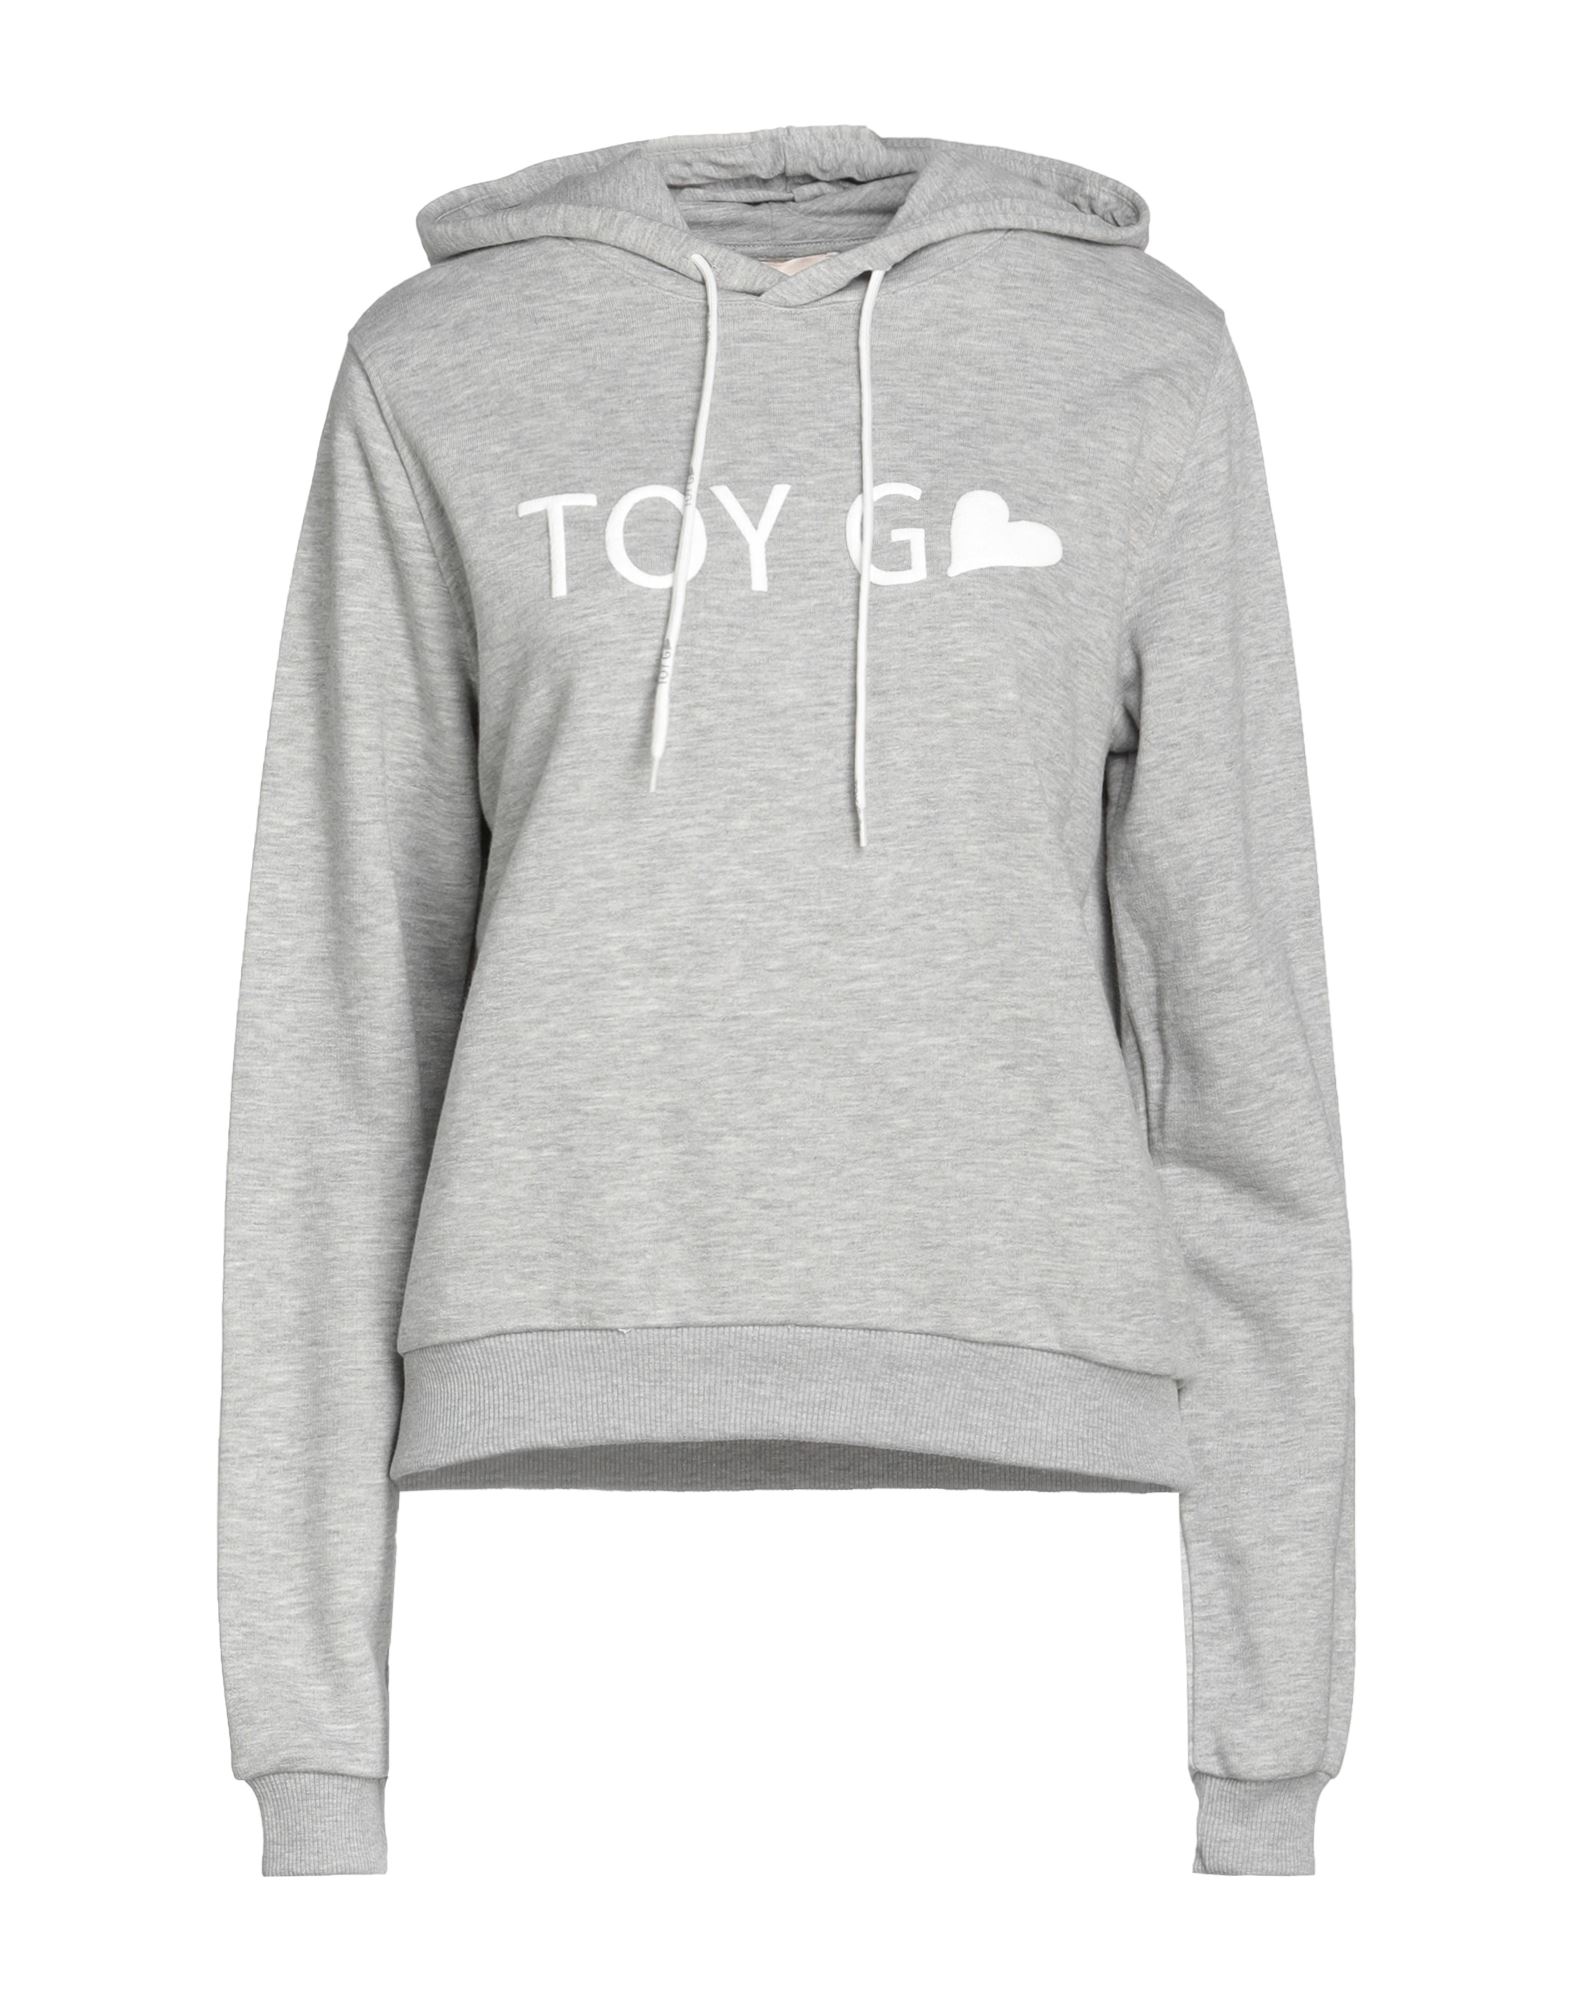 Toy G. Sweatshirts In Grey